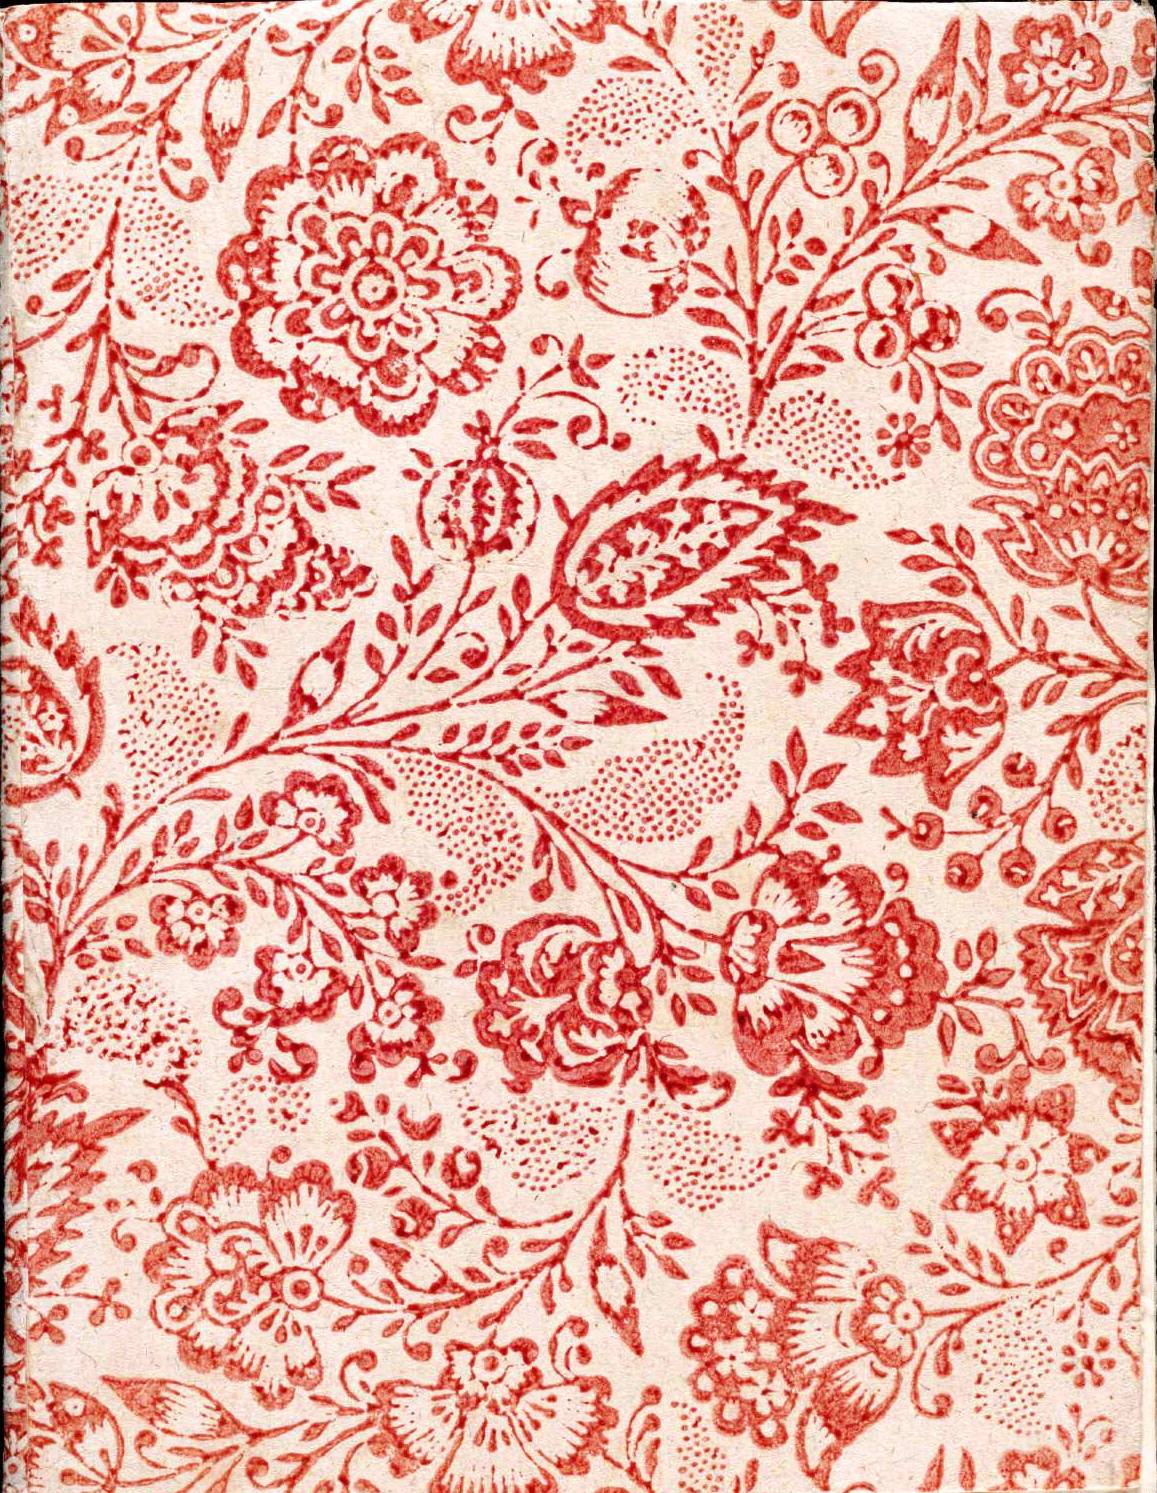 7 Best Images of Printable Vintage Paper Designs Paper Floral Design